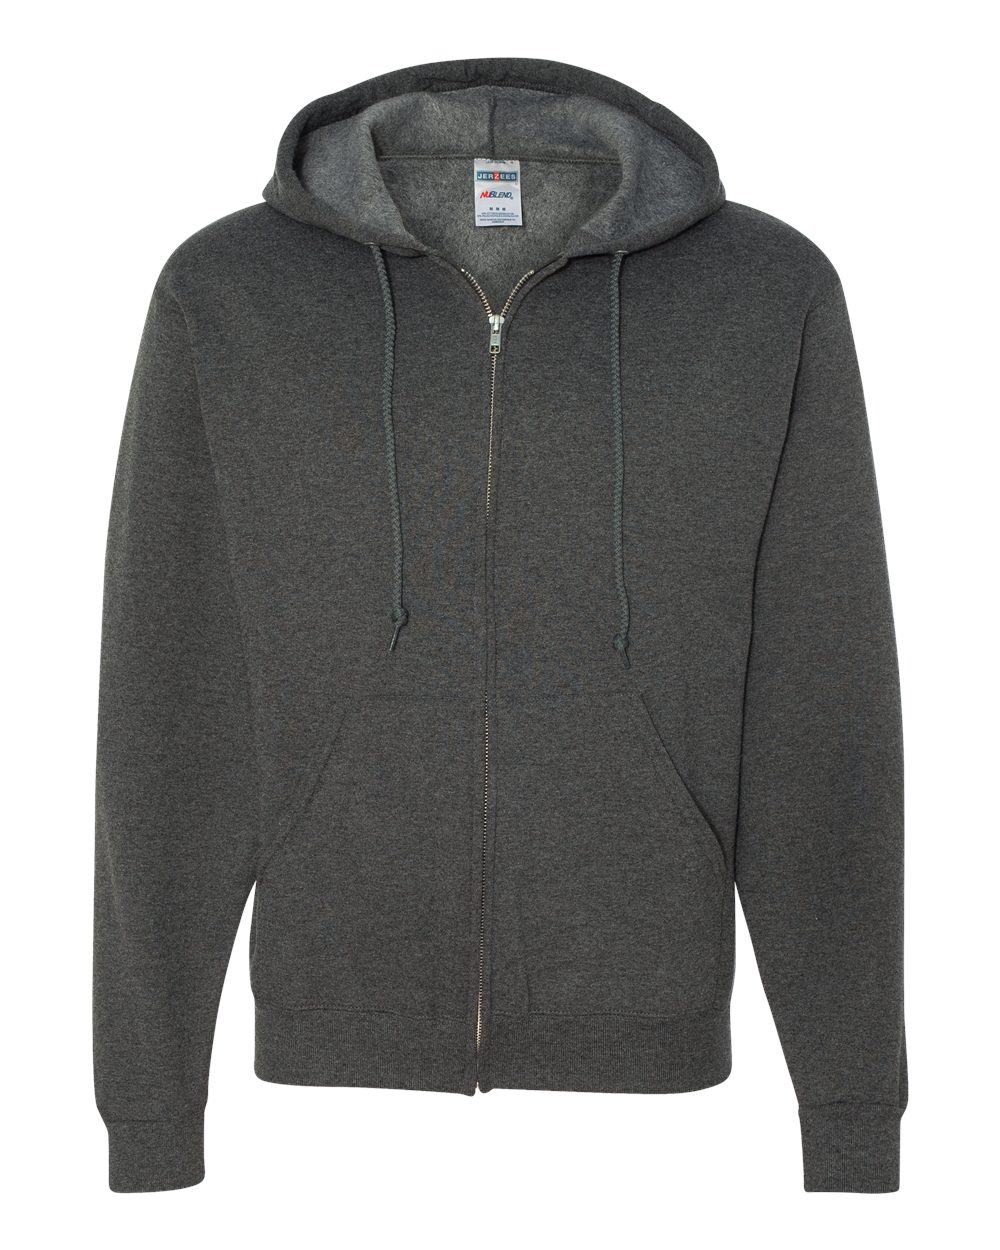 JERZEES® NuBlend Full-Zip Hooded Sweatshirt